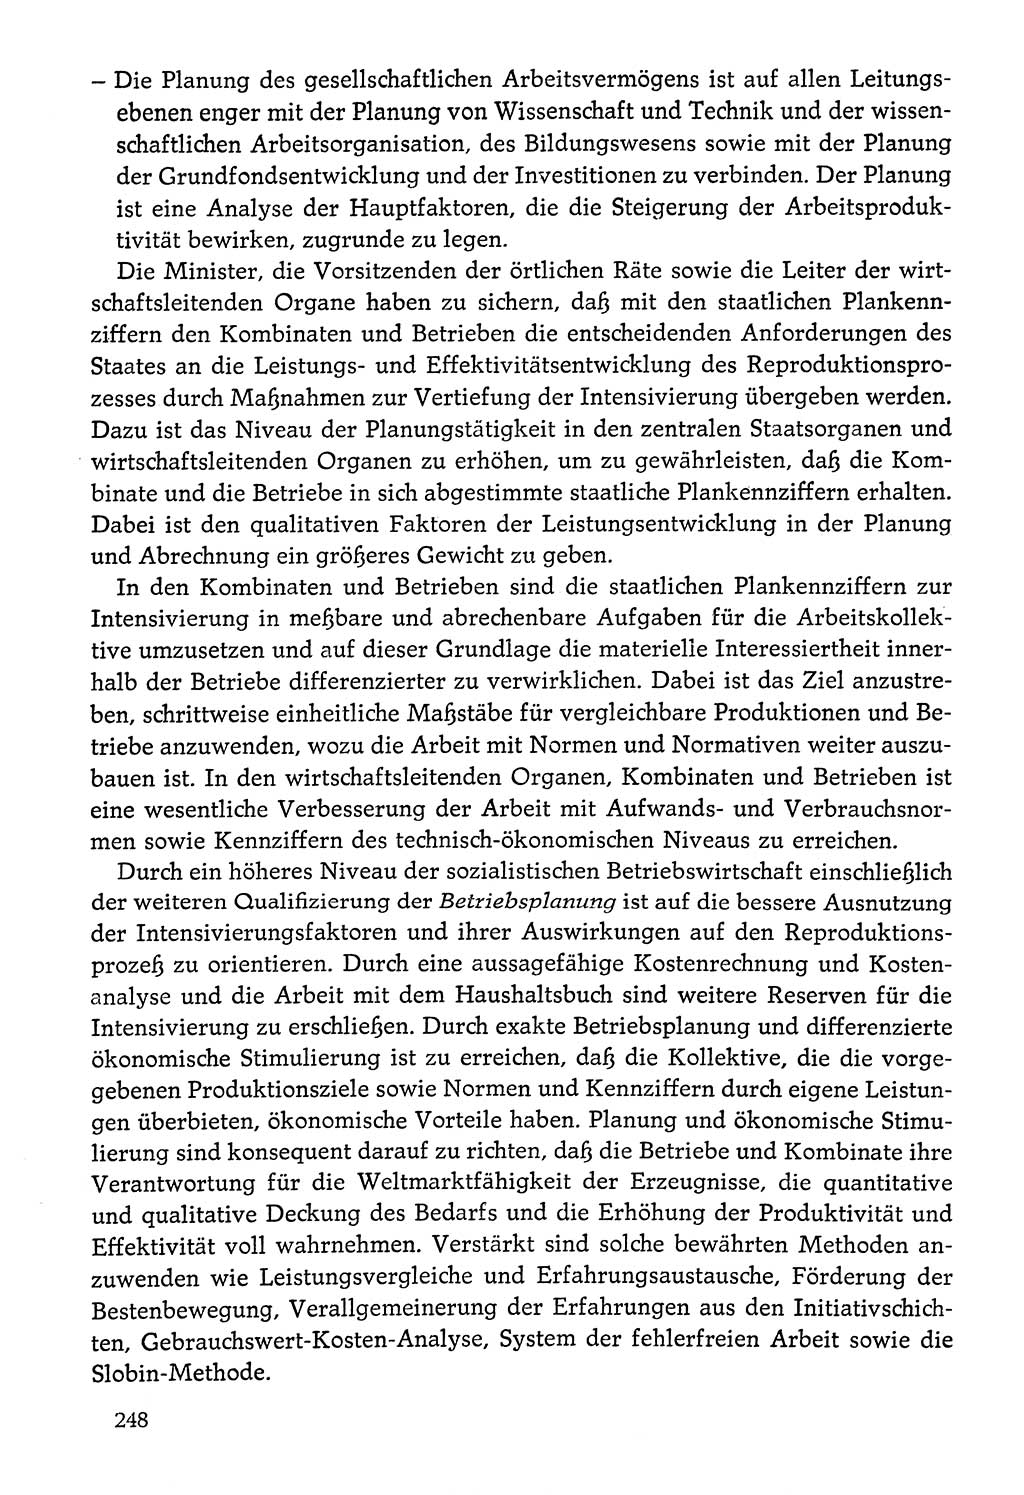 Dokumente der Sozialistischen Einheitspartei Deutschlands (SED) [Deutsche Demokratische Republik (DDR)] 1976-1977, Seite 248 (Dok. SED DDR 1976-1977, S. 248)